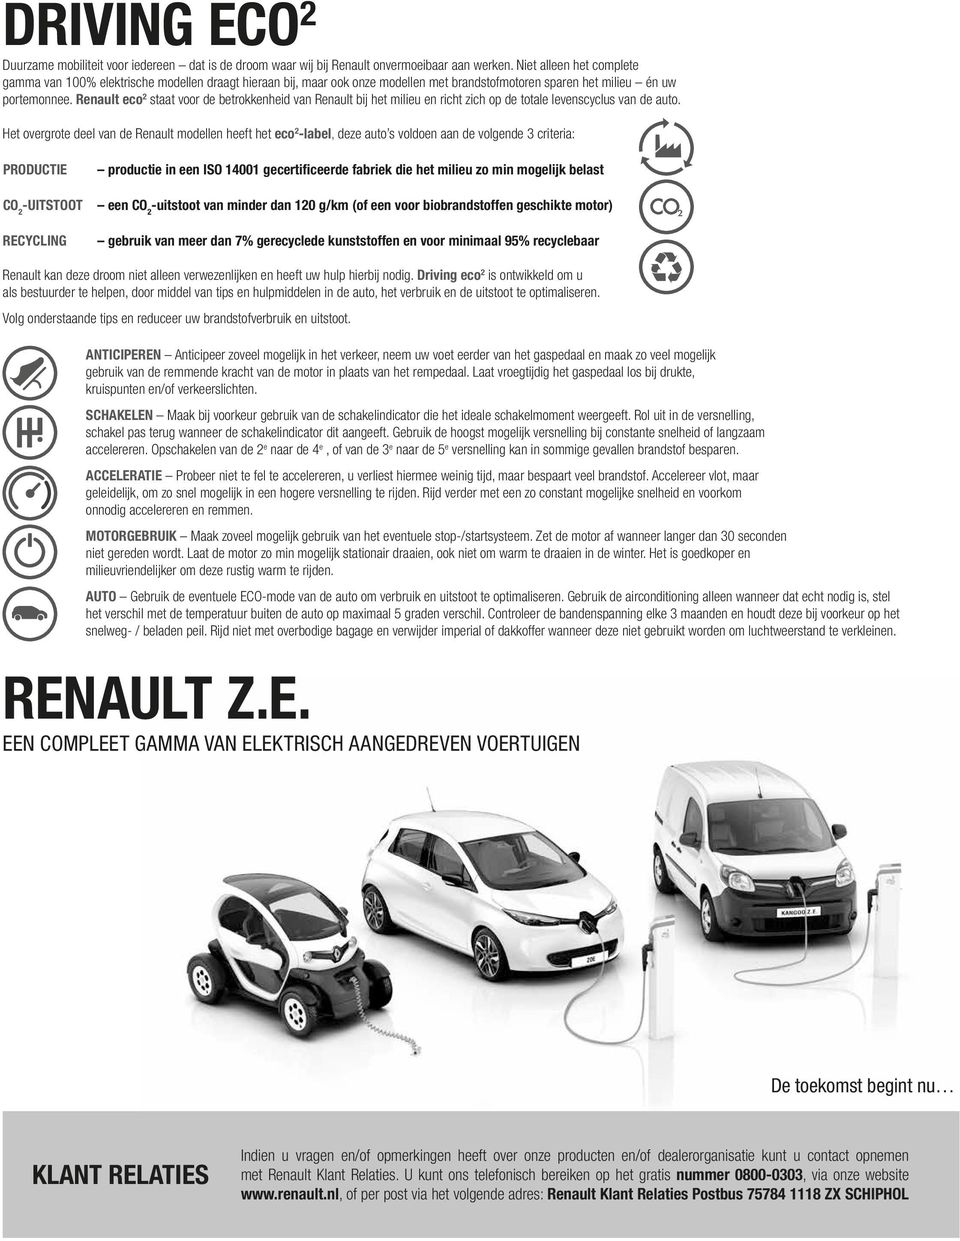 Renault eco staat voor de betrokkenheid van Renault bij het milieu en richt zich op de totale levenscyclus van de auto.